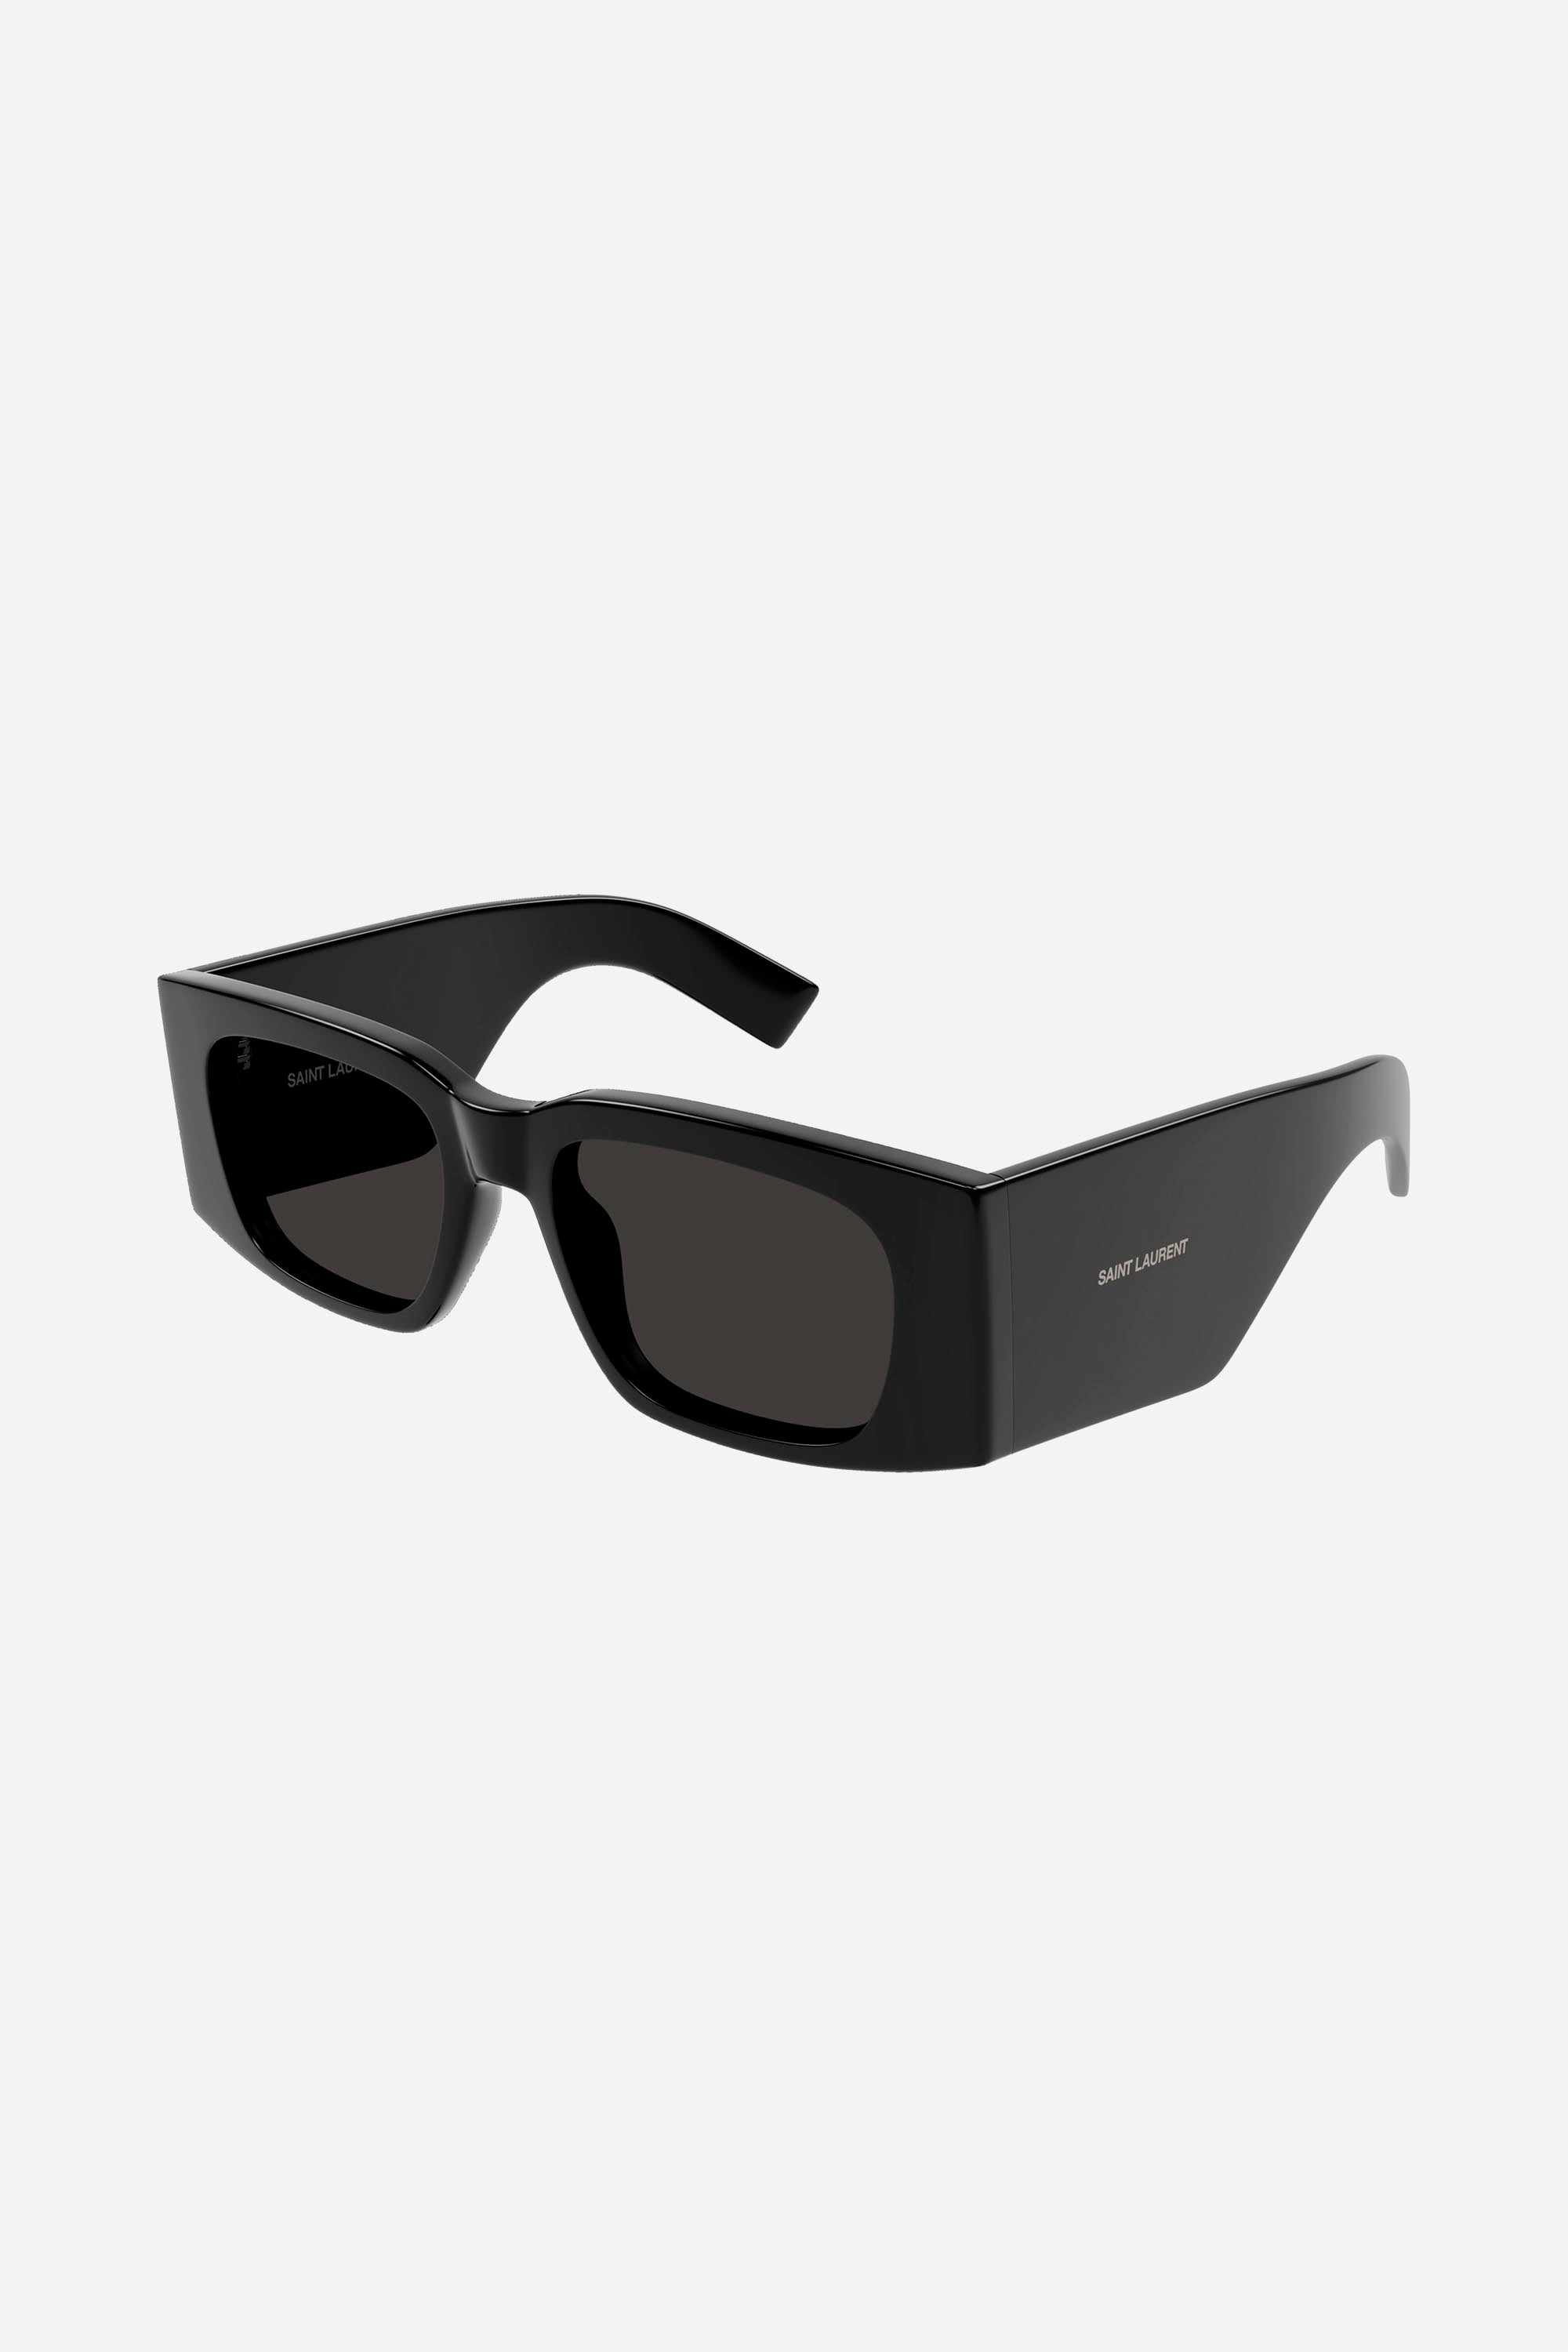 Saint Laurent acetate SL 654 black sunglasses - Eyewear Club